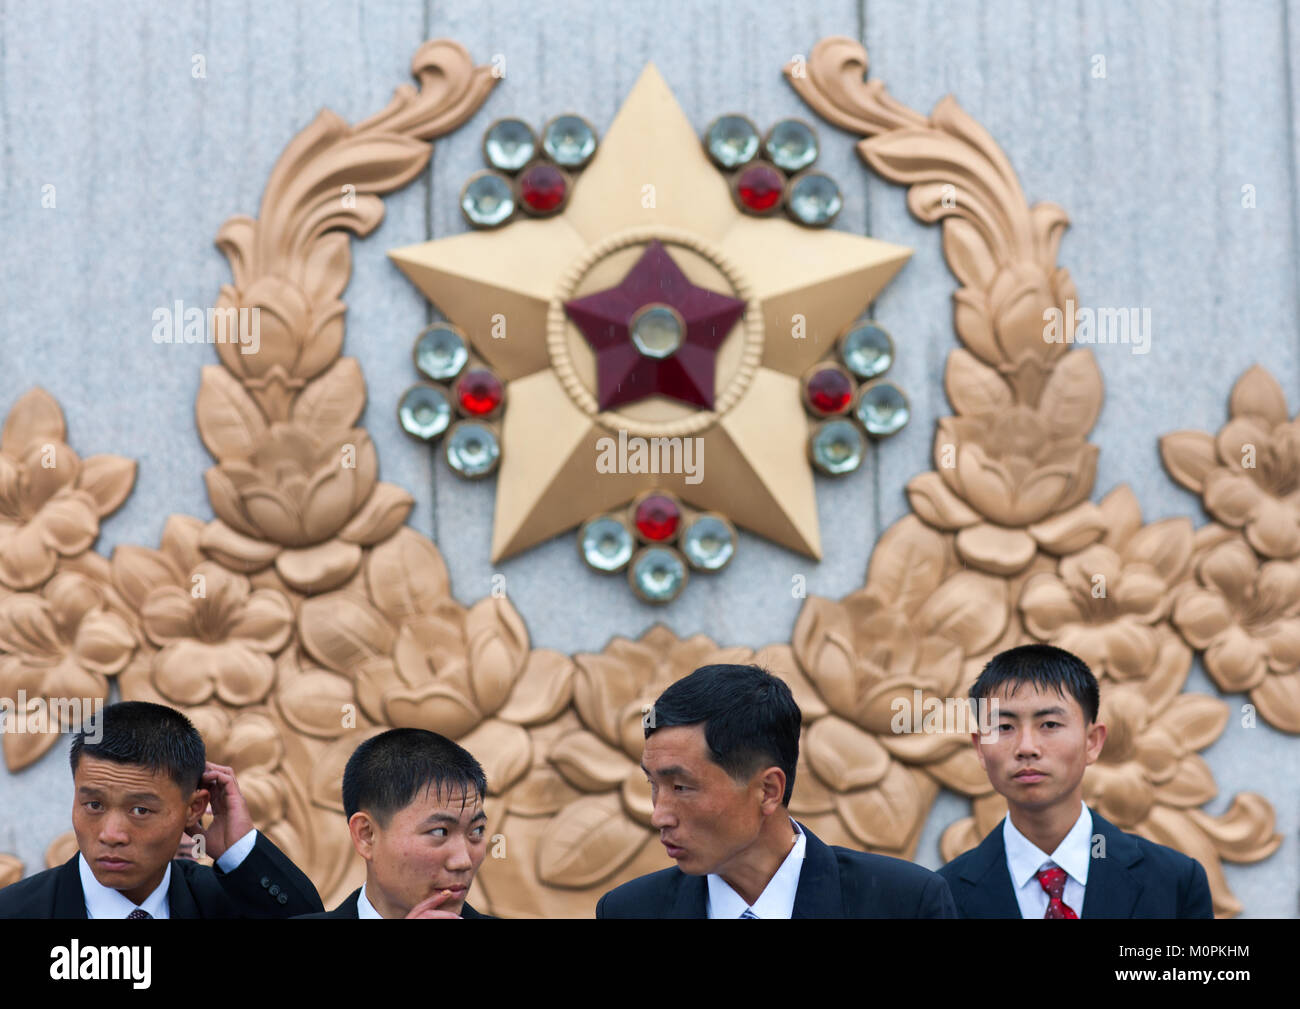 Les hommes de la Corée du Nord sous la pluie en mémorial Kumsusan palace posant devant le commandant suprême de l'Armée populaire de Corée, du logo de la province de Pyongan, Pyongyang, Corée du Nord Banque D'Images